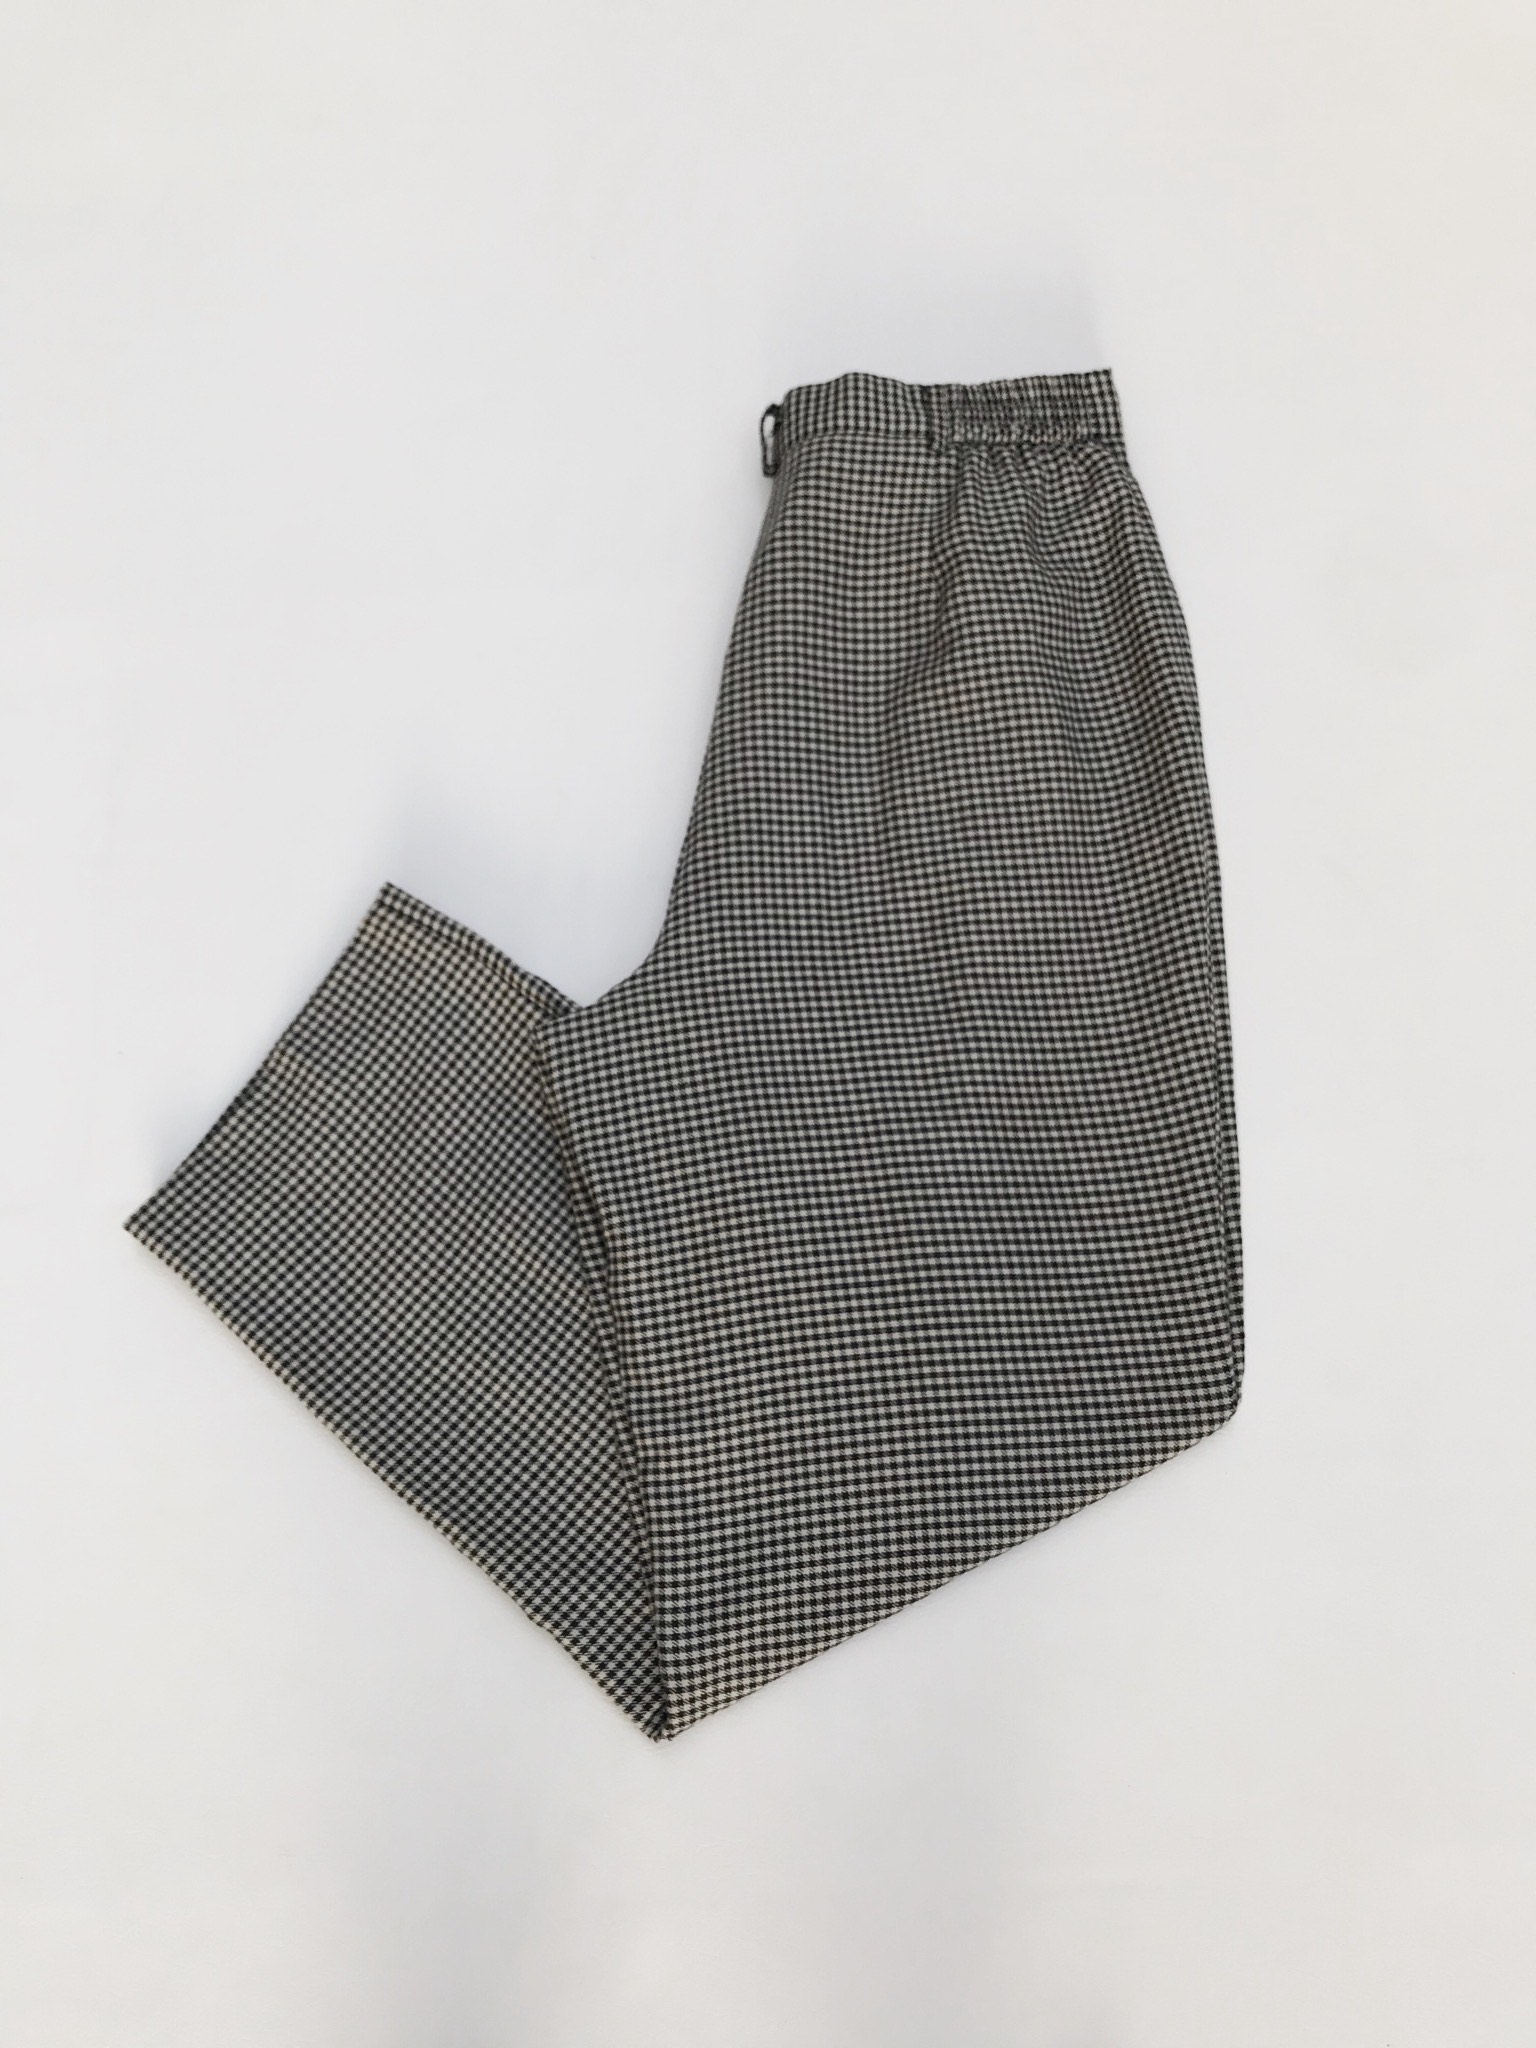 Pantalón vintage estampado pata de gallo negro y beige, a la cintura, corte recto con pinzas. 
Talla 32 (US10)